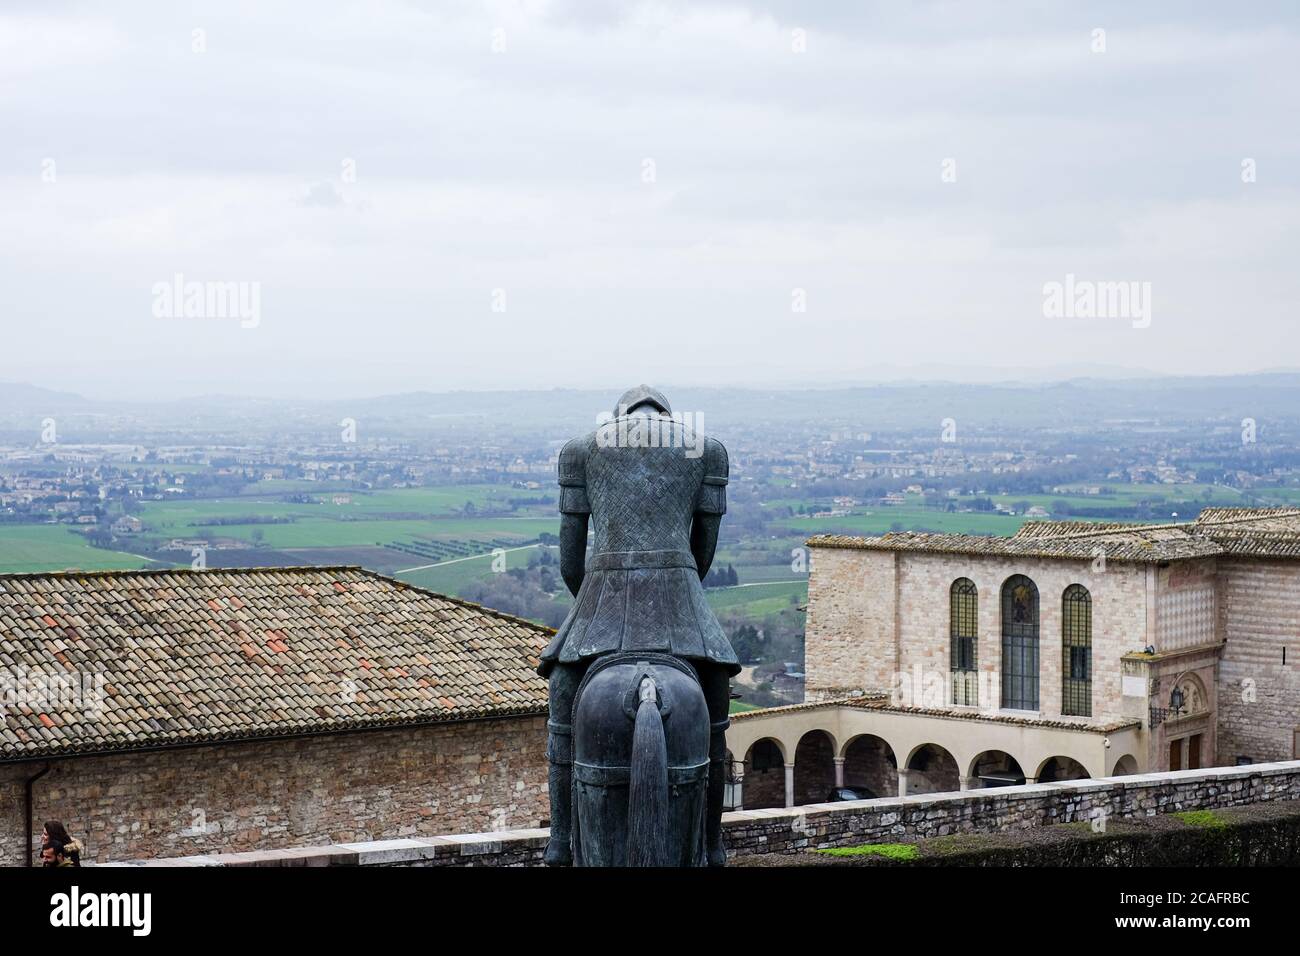 Asís,italia- junio 30 2020: Famosa escultura de bronce frente a la iglesia de san francisco de Asís sobre el paisaje de la ciudad vieja, italia Foto de stock